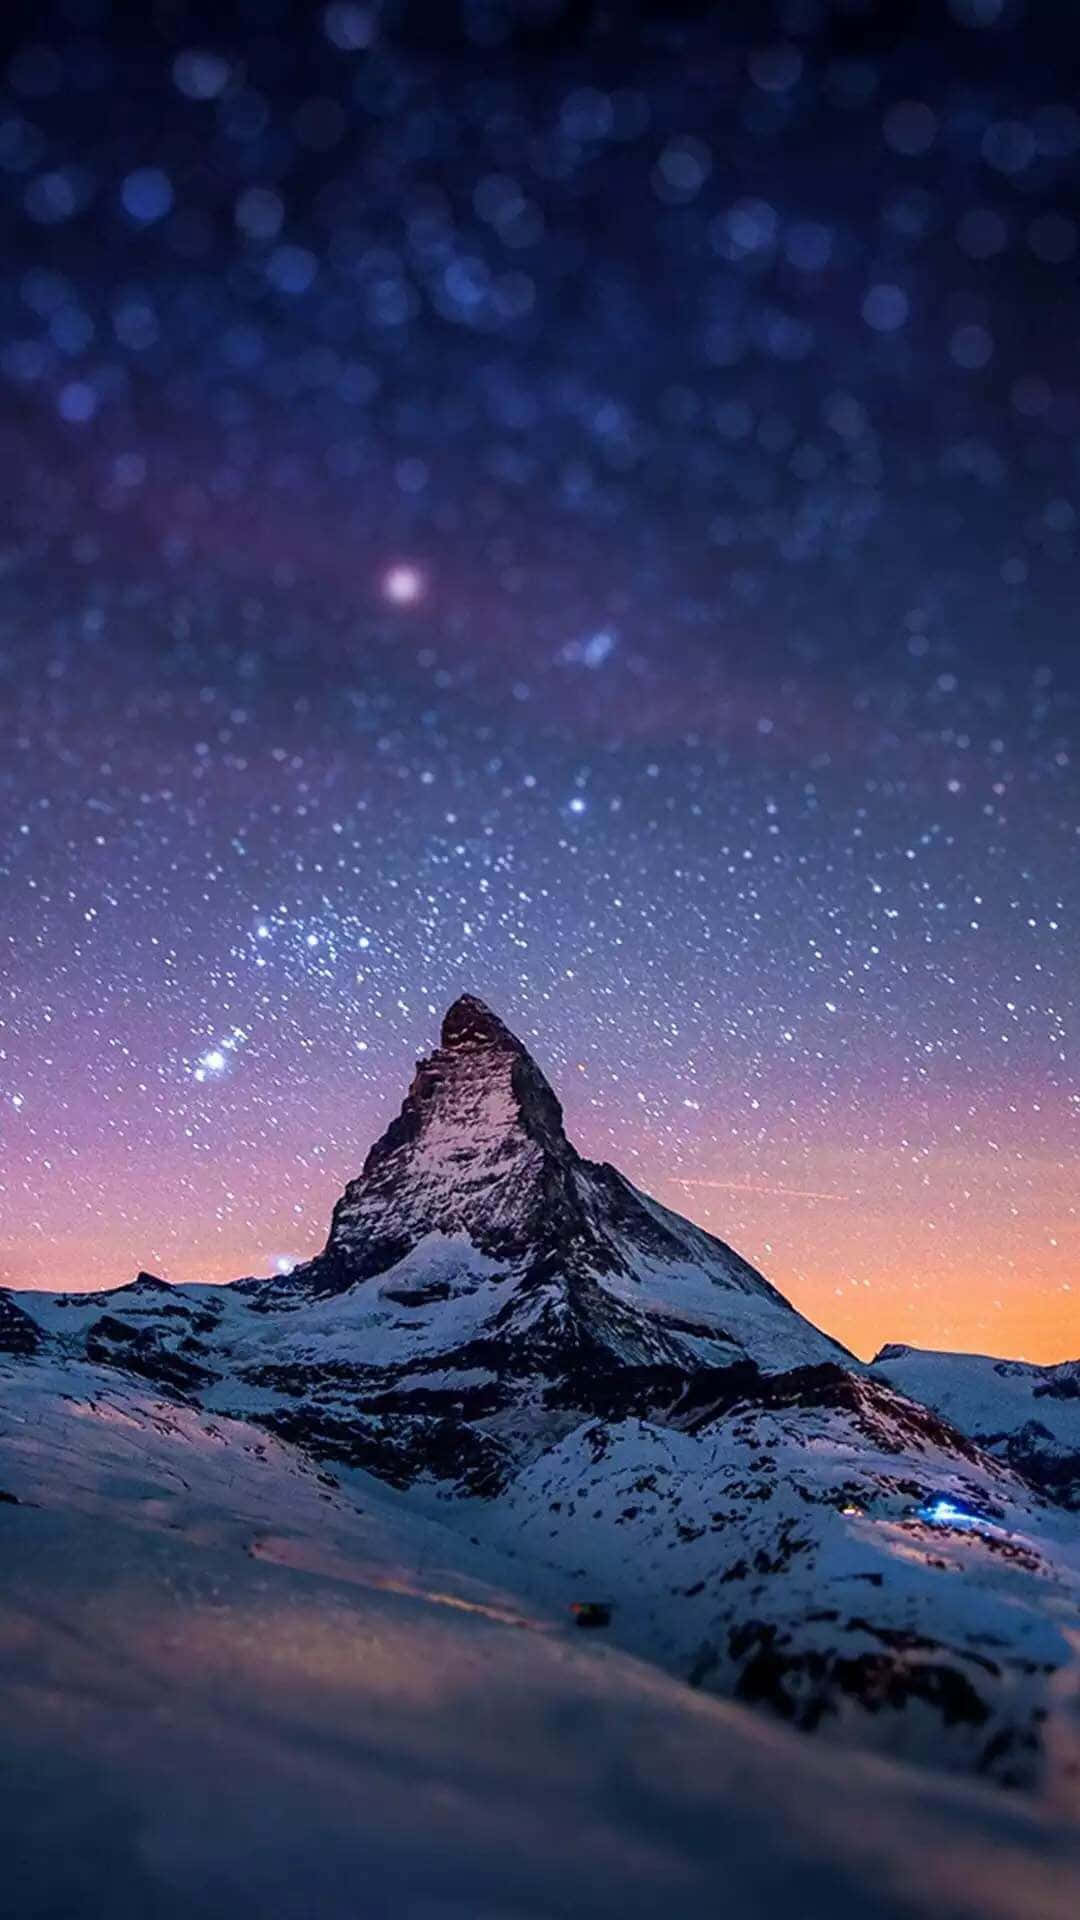 Eineverschneite Winterlandschaft Mit Bergen Und Bäumen Im Hintergrund, Mit Einem Iphone 6 Plus Im Vordergrund. Wallpaper